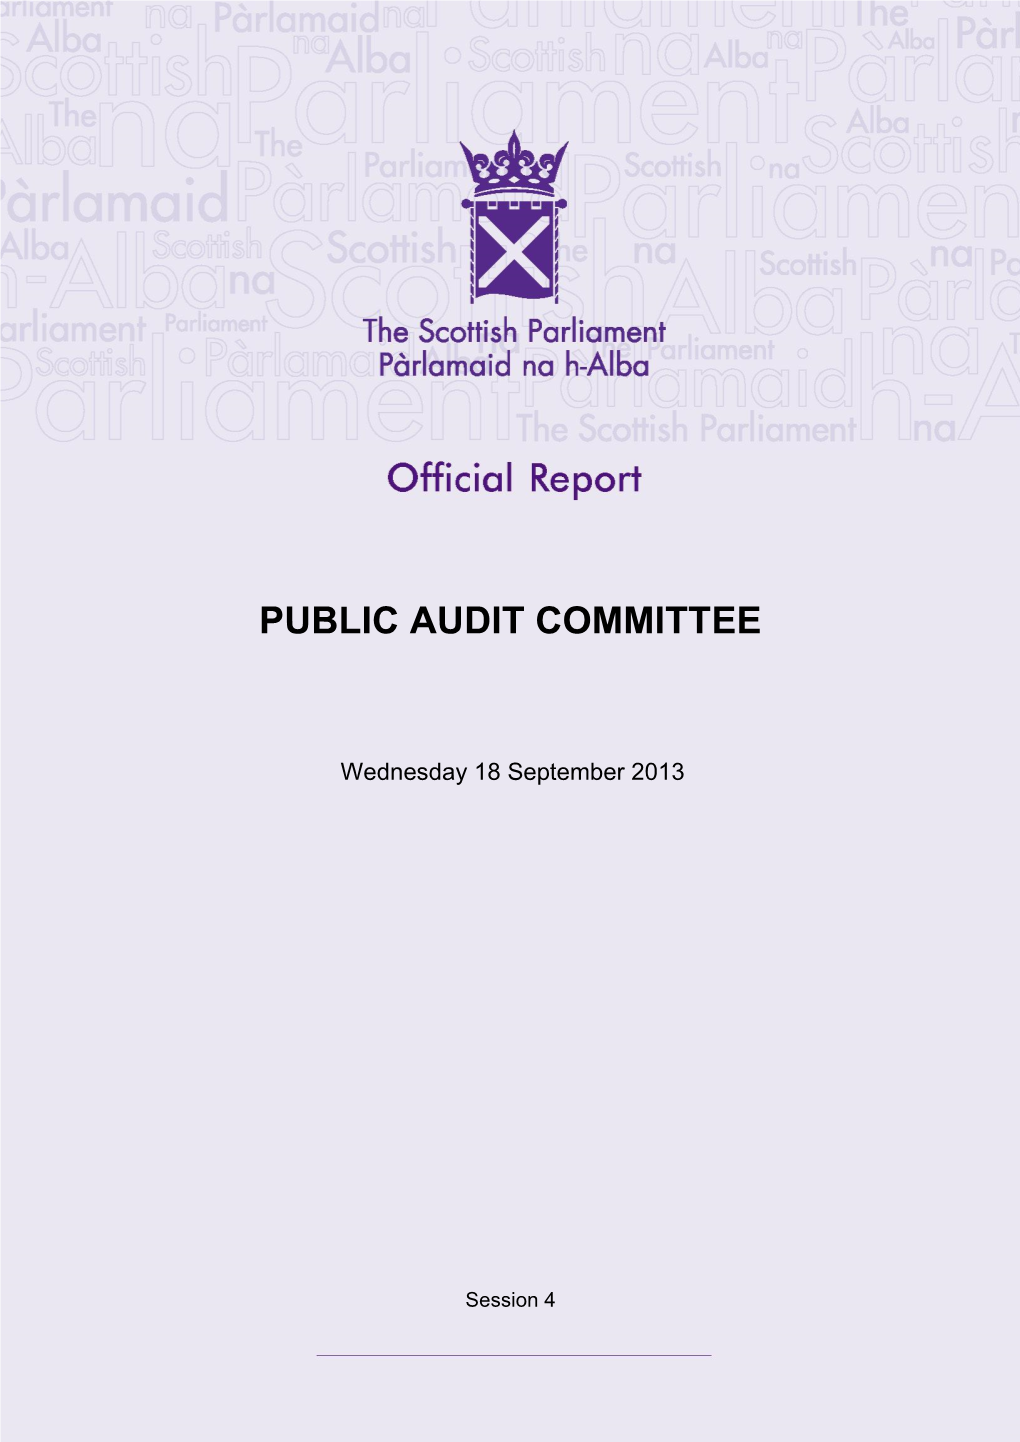 Public Audit Committee